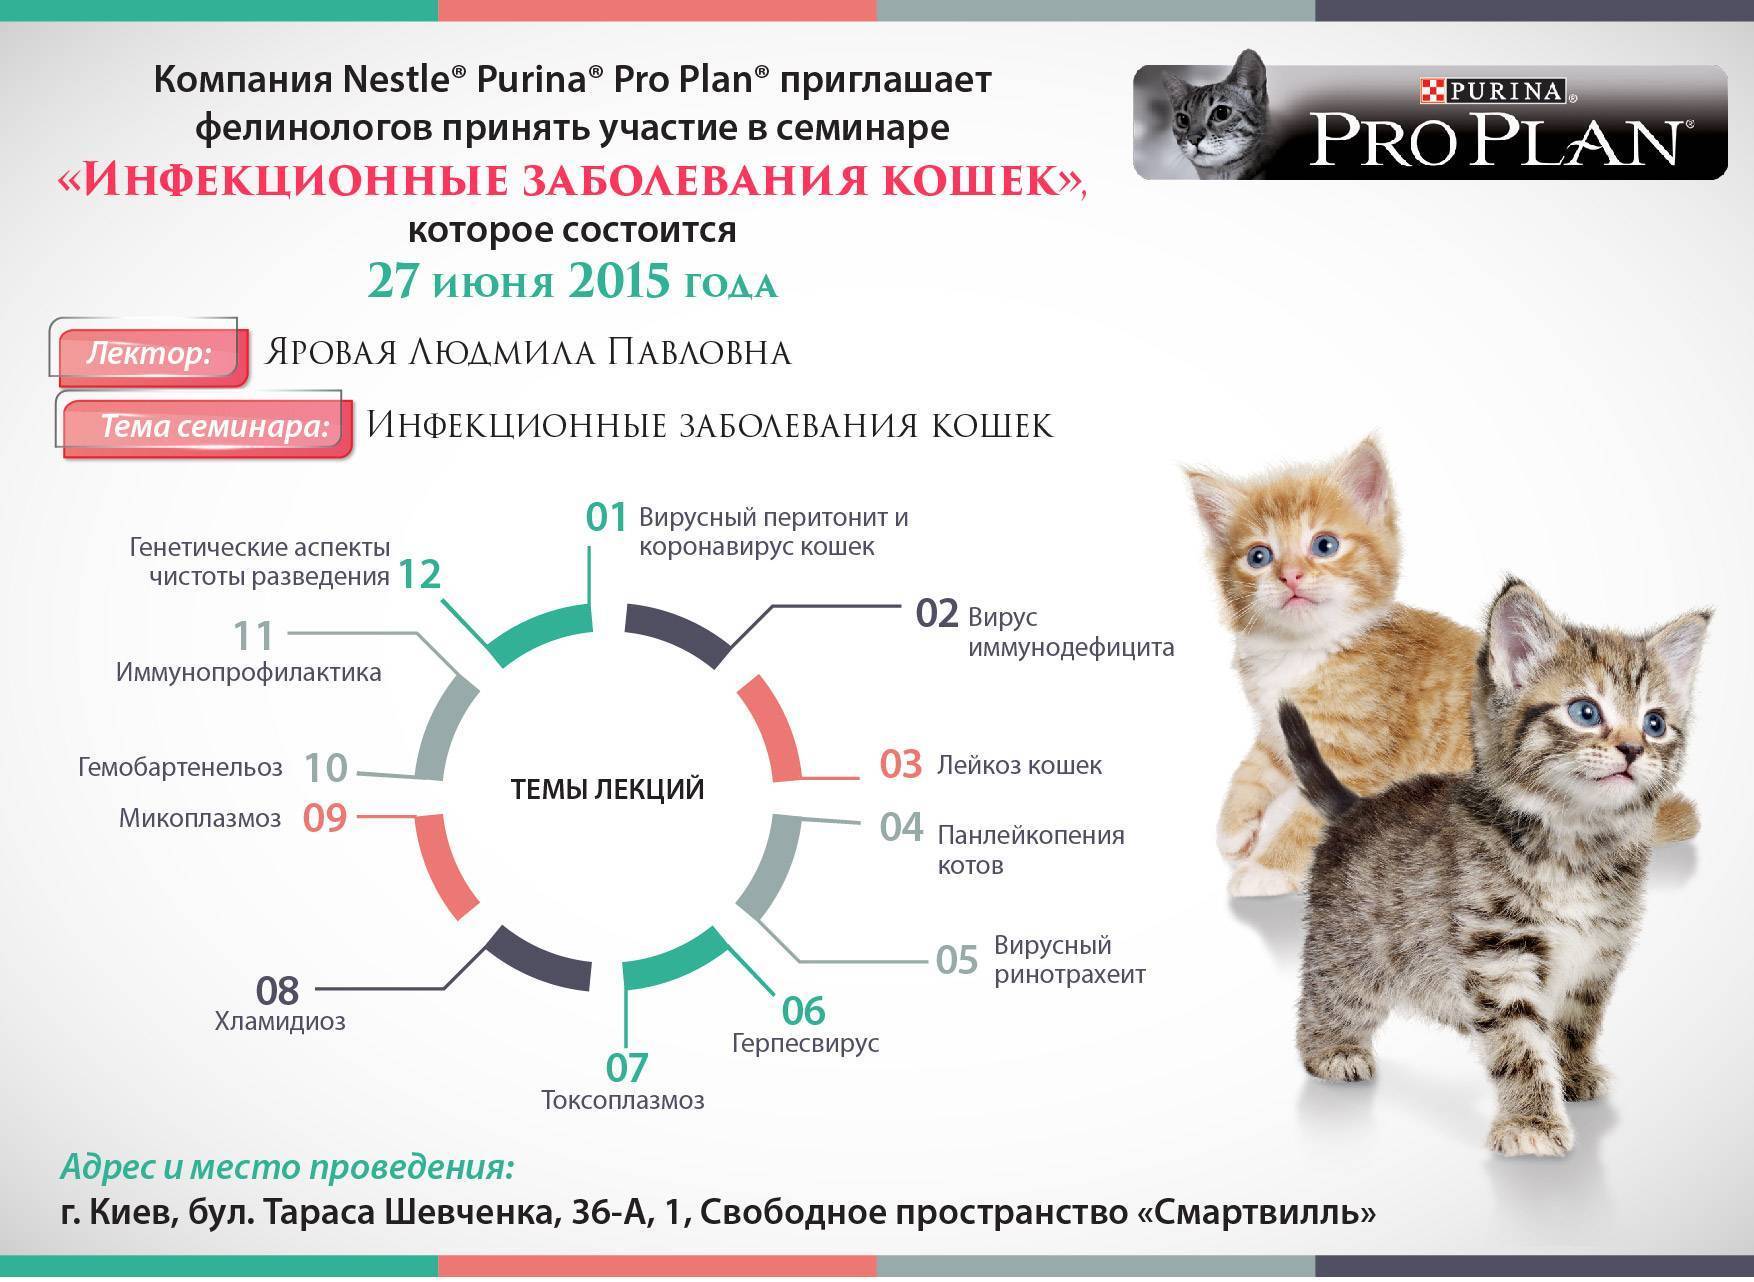 Кожные болезни у кошек: основные признаки и диагностика и лечение +фото и видео